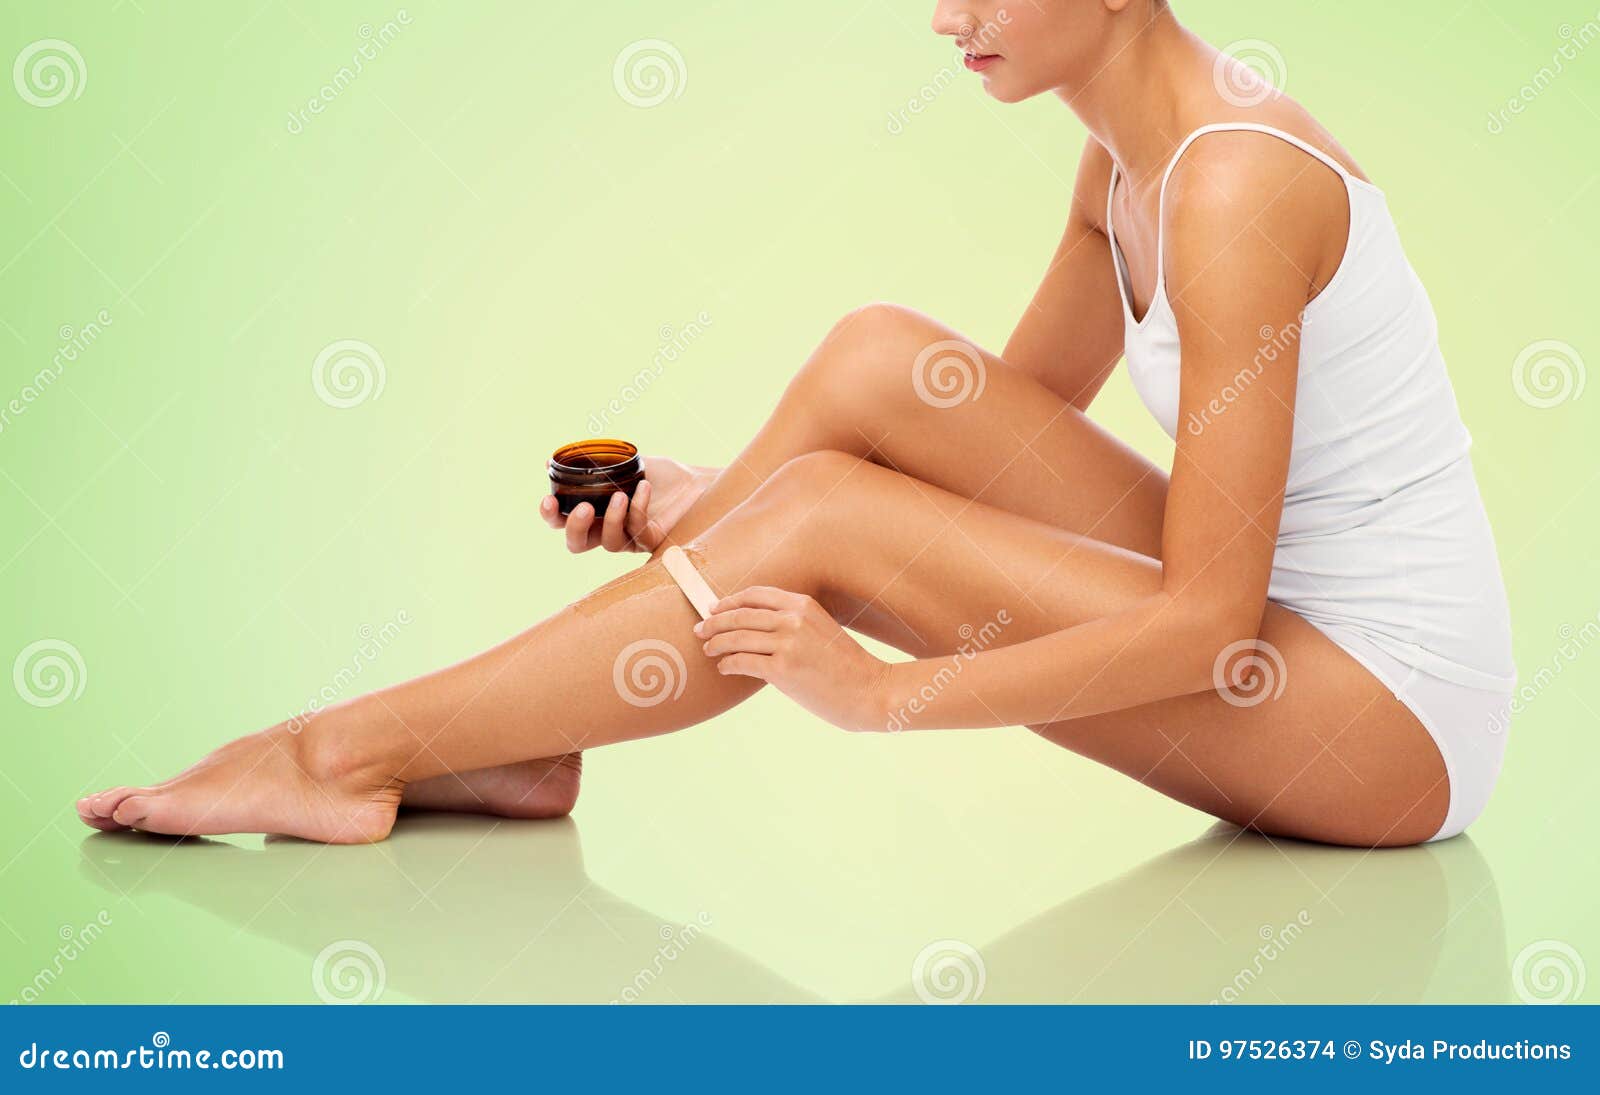 beautiful woman applying depilatory wax to her leg